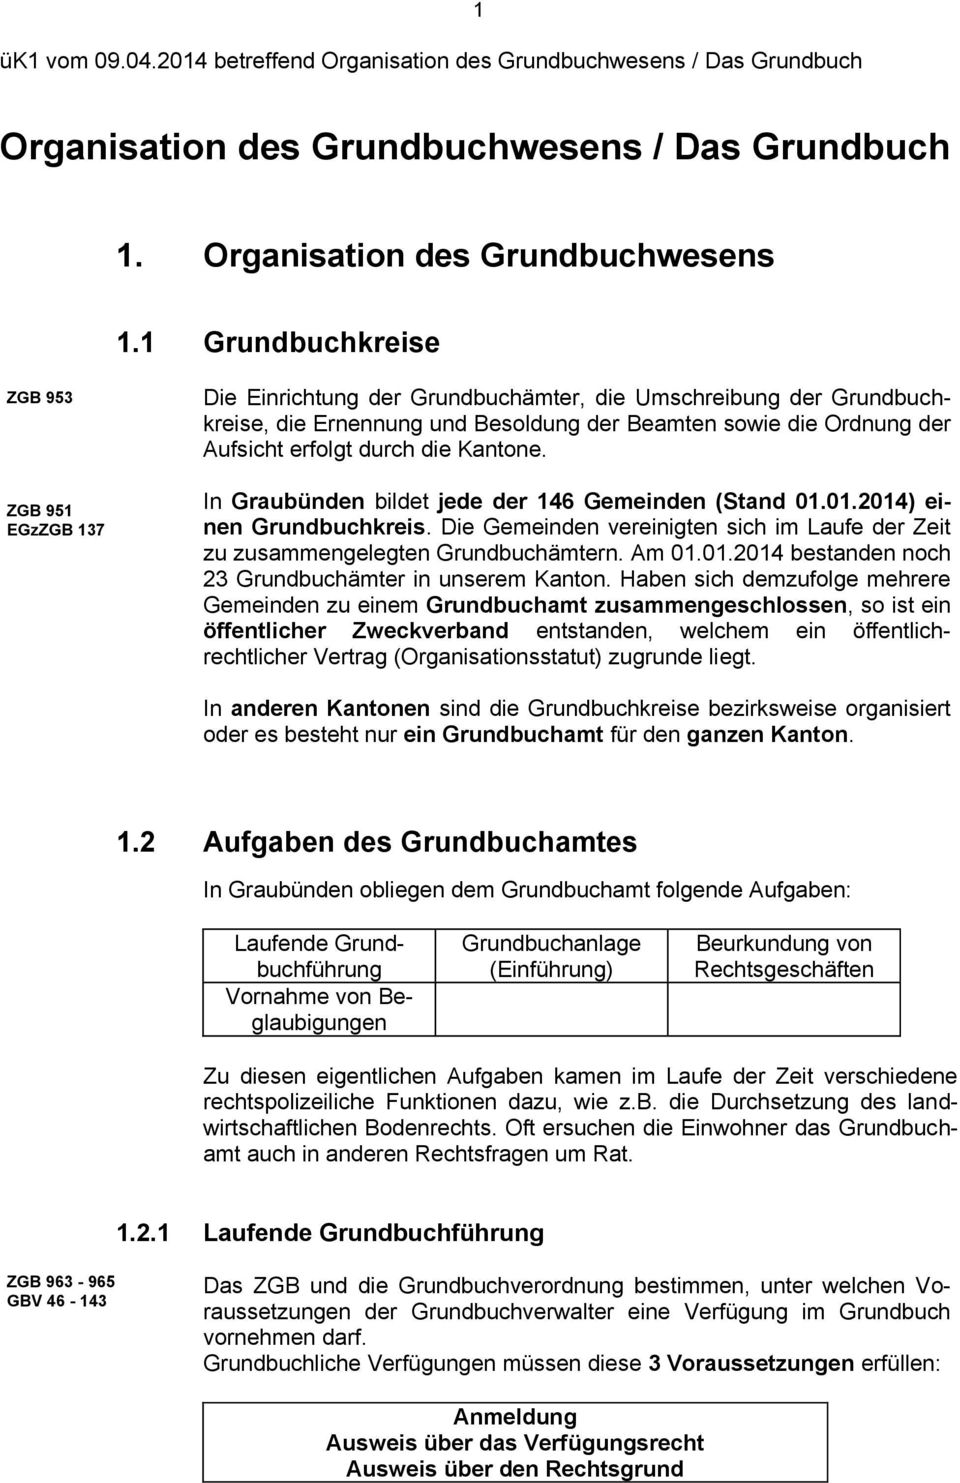 durch die Kantone. In Graubünden bildet jede der 146 Gemeinden (Stand 01.01.2014) einen Grundbuchkreis. Die Gemeinden vereinigten sich im Laufe der Zeit zu zusammengelegten Grundbuchämtern. Am 01.01.2014 bestanden noch 23 Grundbuchämter in unserem Kanton.